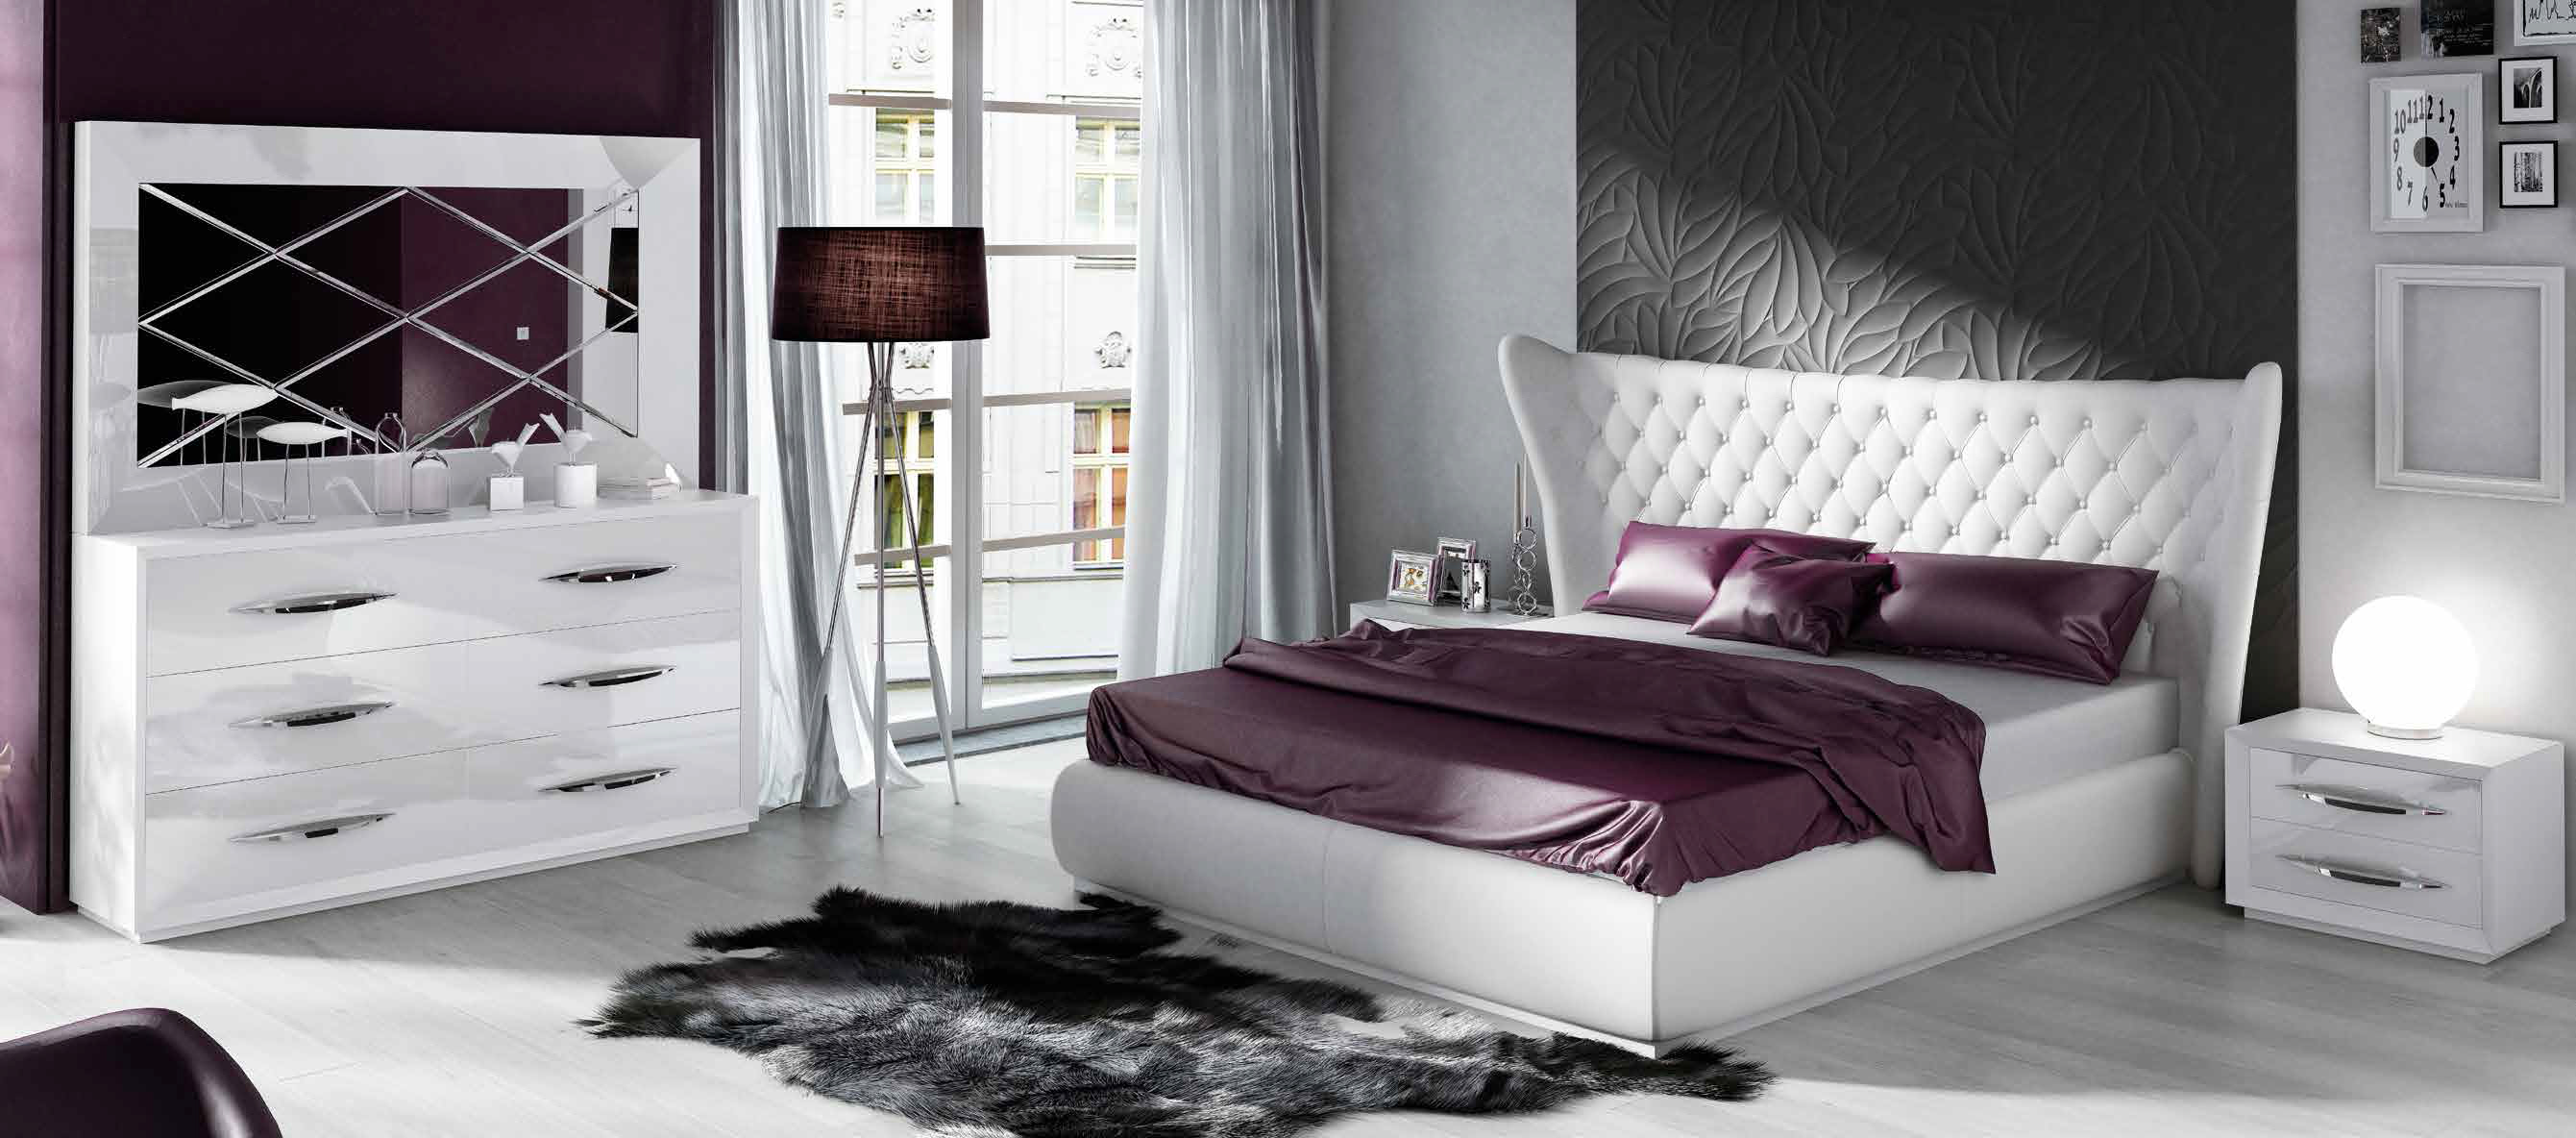 Bedroom Furniture Beds DOR 83